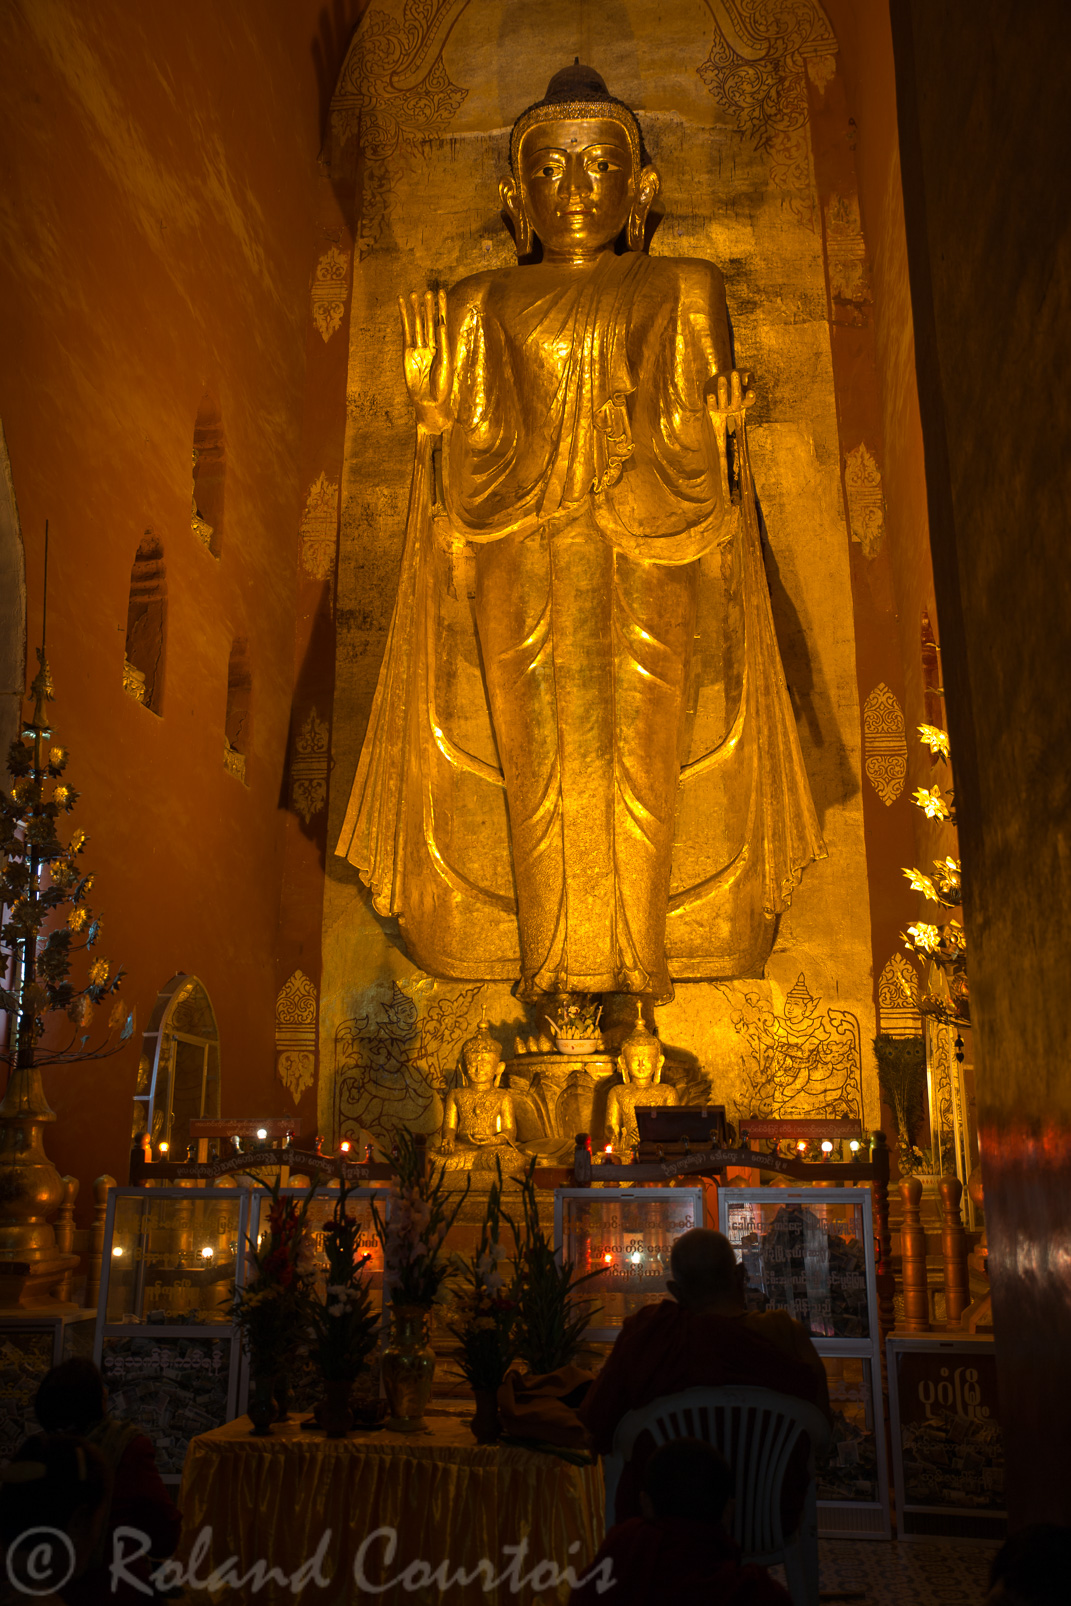 Dans ce temple, il y a 4 Bouddhas majestueux debout, tournés vers les quatre points cardinaux. Celui-ci est tourné vers l'ouest avec à ses pieds deux statuettes représentant le roi Kyan-Zittha et le moine Shin Arahan.